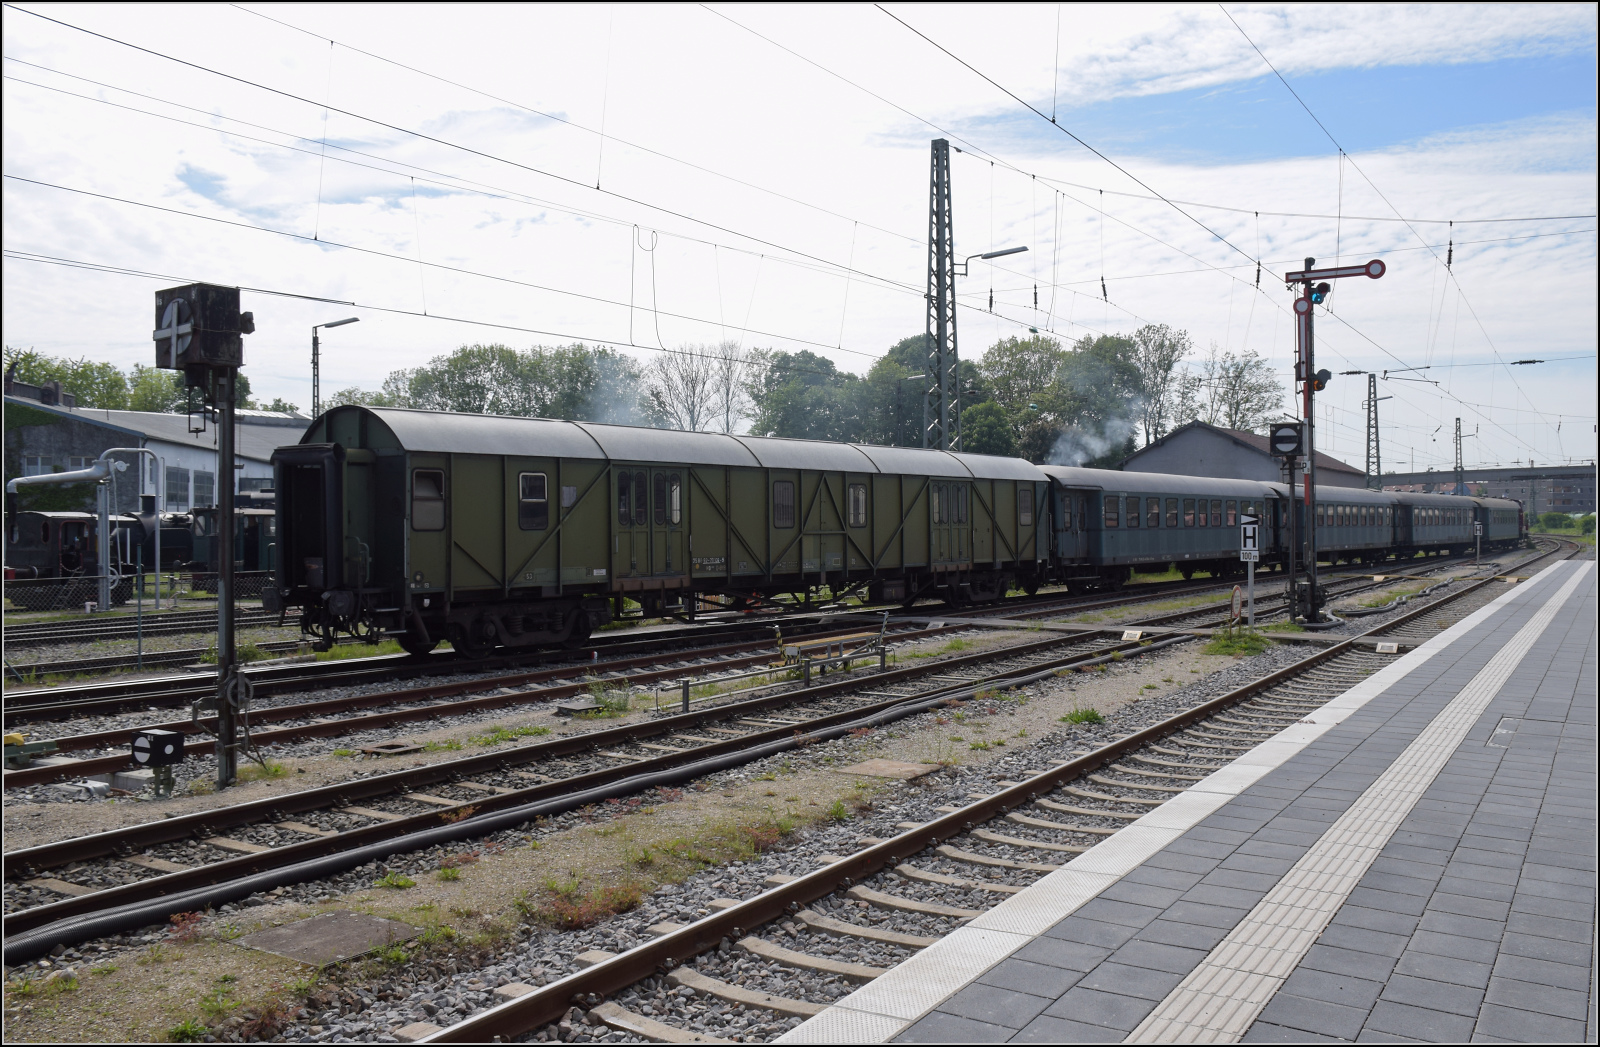 175 Jahre Eisenbahn in Nrdlingen / 55 Jahre Bayrisches Eisenbahnmuseum.

Hilfsgepckwagen MD 75 80 92-29 101-5 D-BYB, ein fast vergessener Anblick bei der Bahn. Mai 2024. 